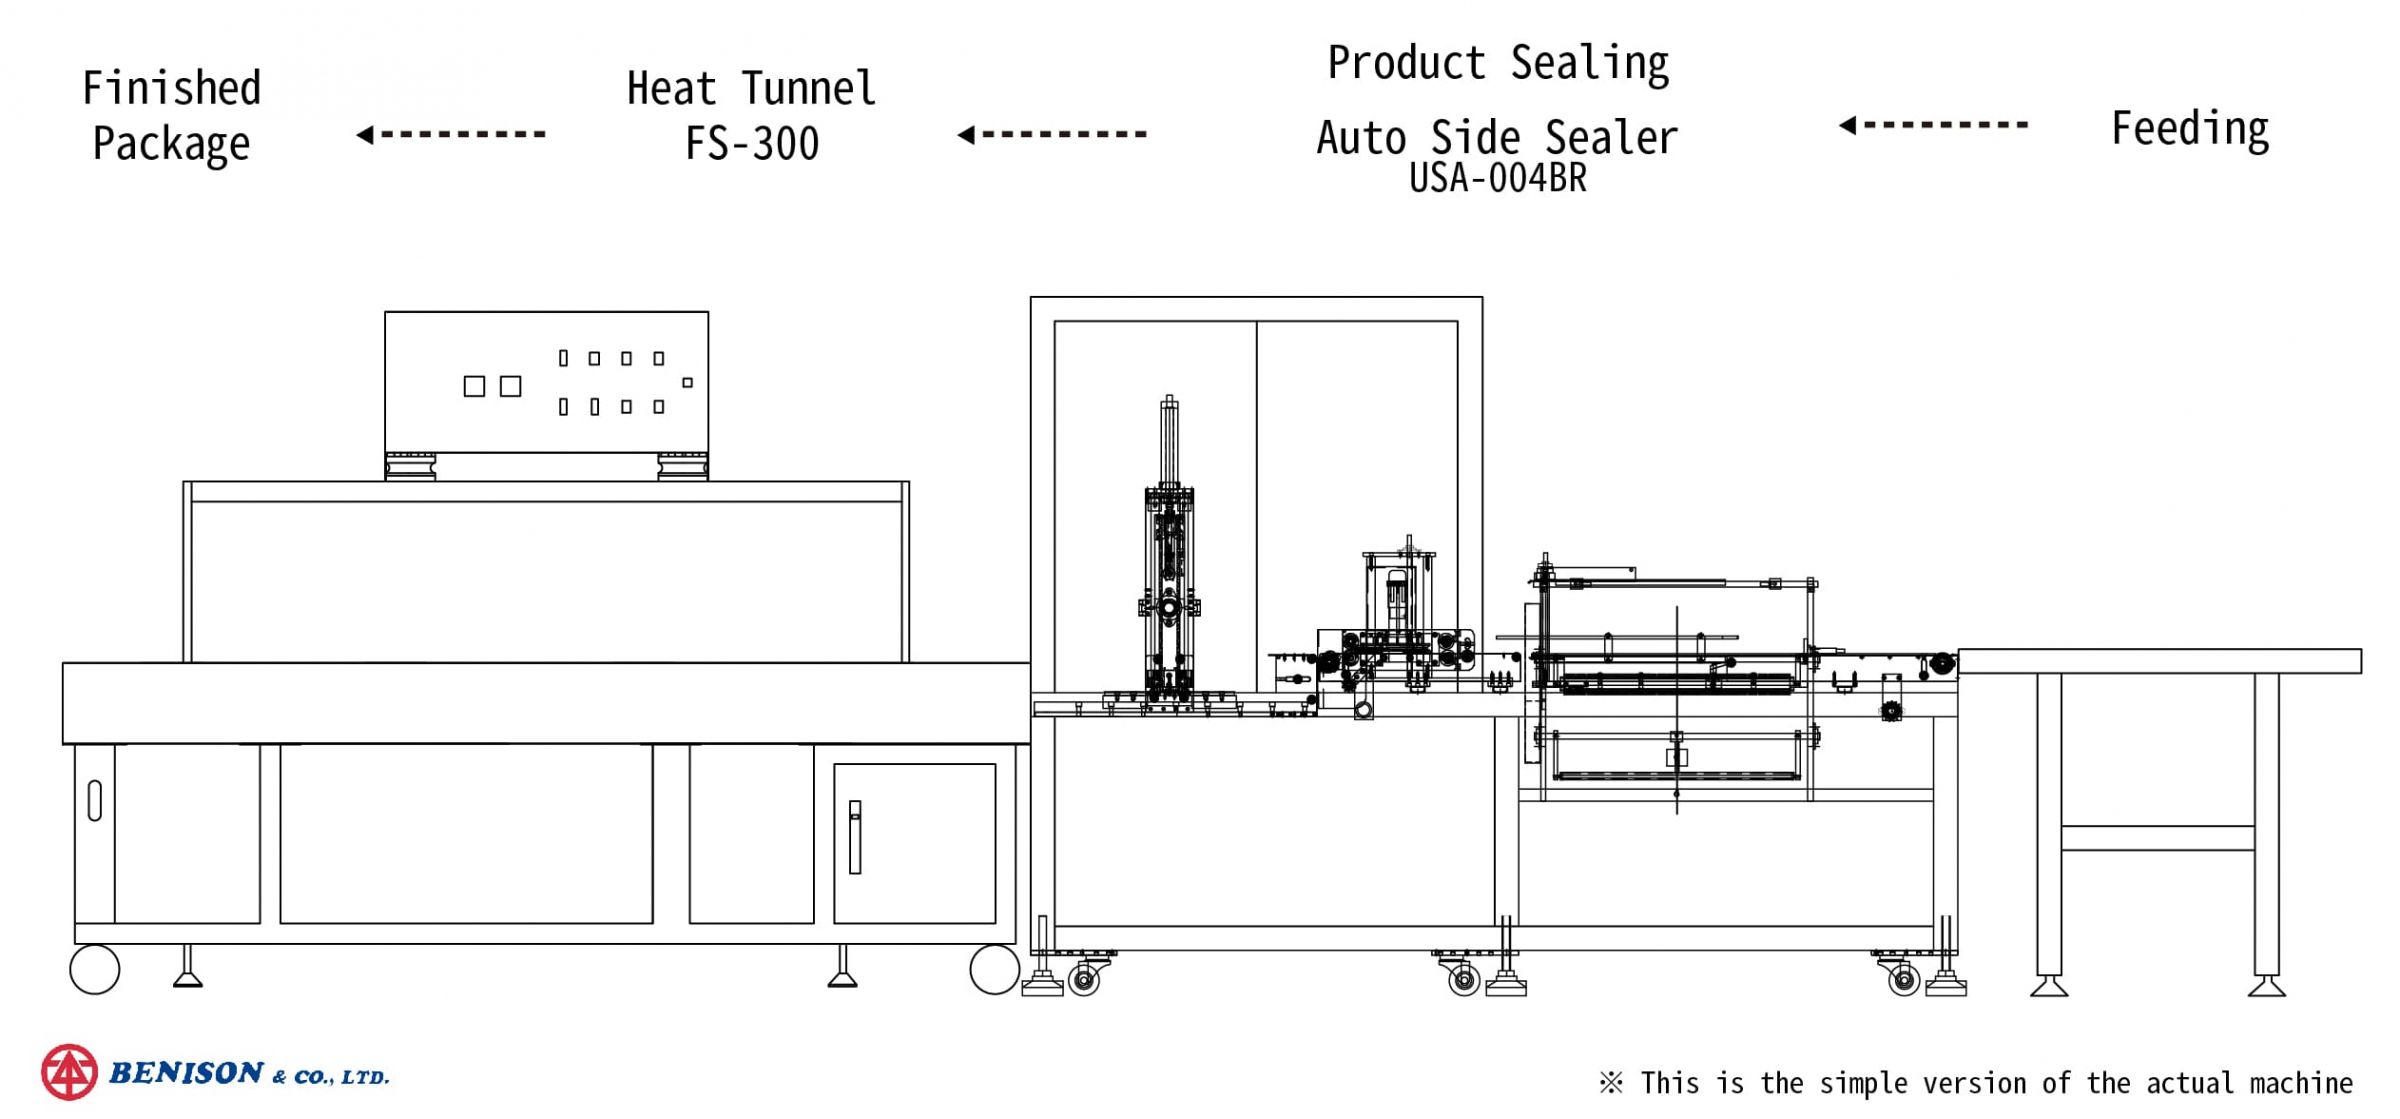 Scelleuse latérale automatique avec tunnel de rétraction pour la planification des solutions de produits alimentaires fonctionnels